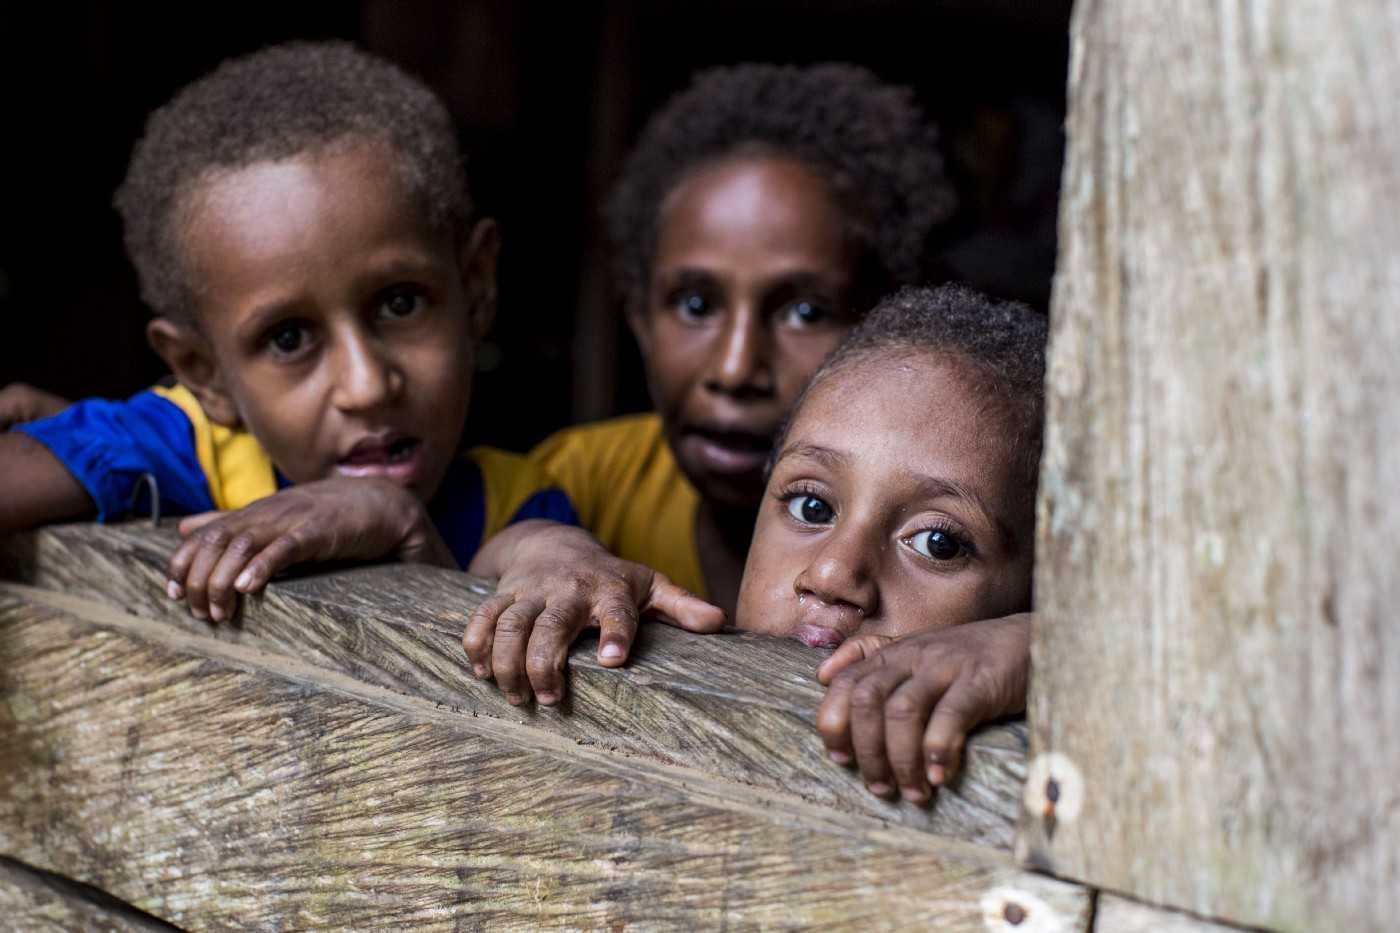 Auyu children in Boven Digoel, 2017. 